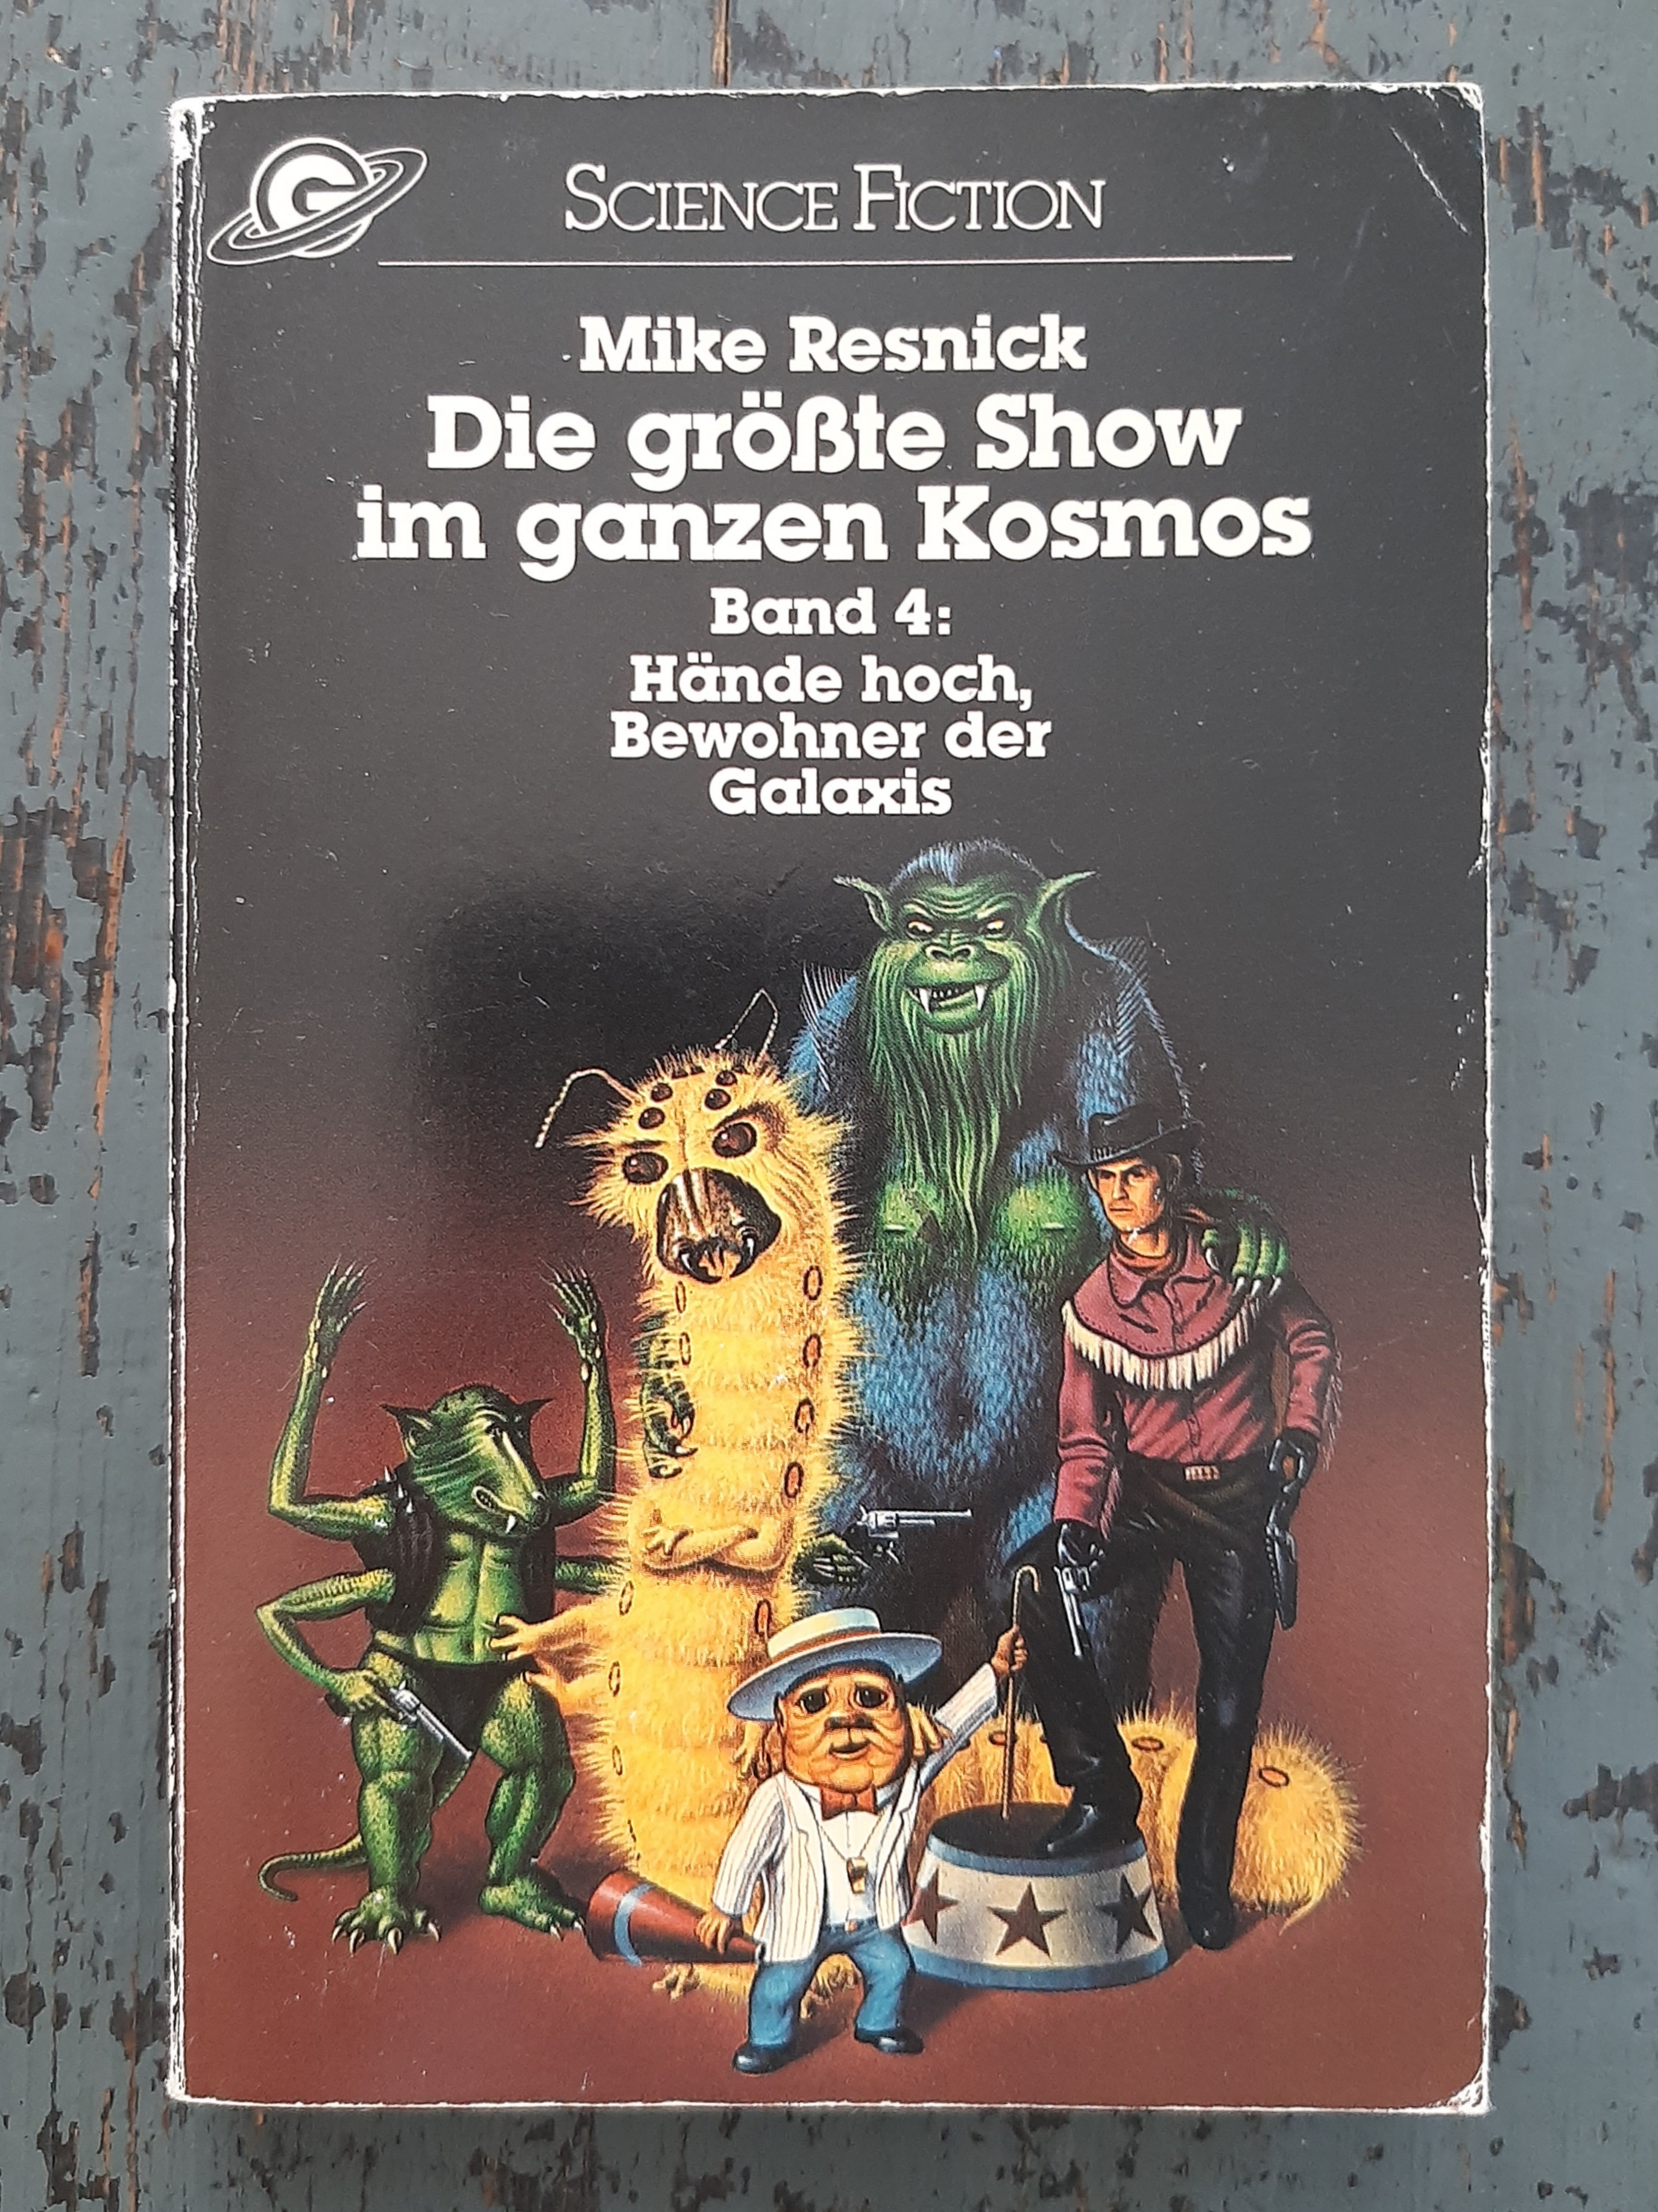 Die größte Show im ganzen Kosmos, Bd. 4 - Hände hoch, Bewohner der Galaxis - Resnick, Mike